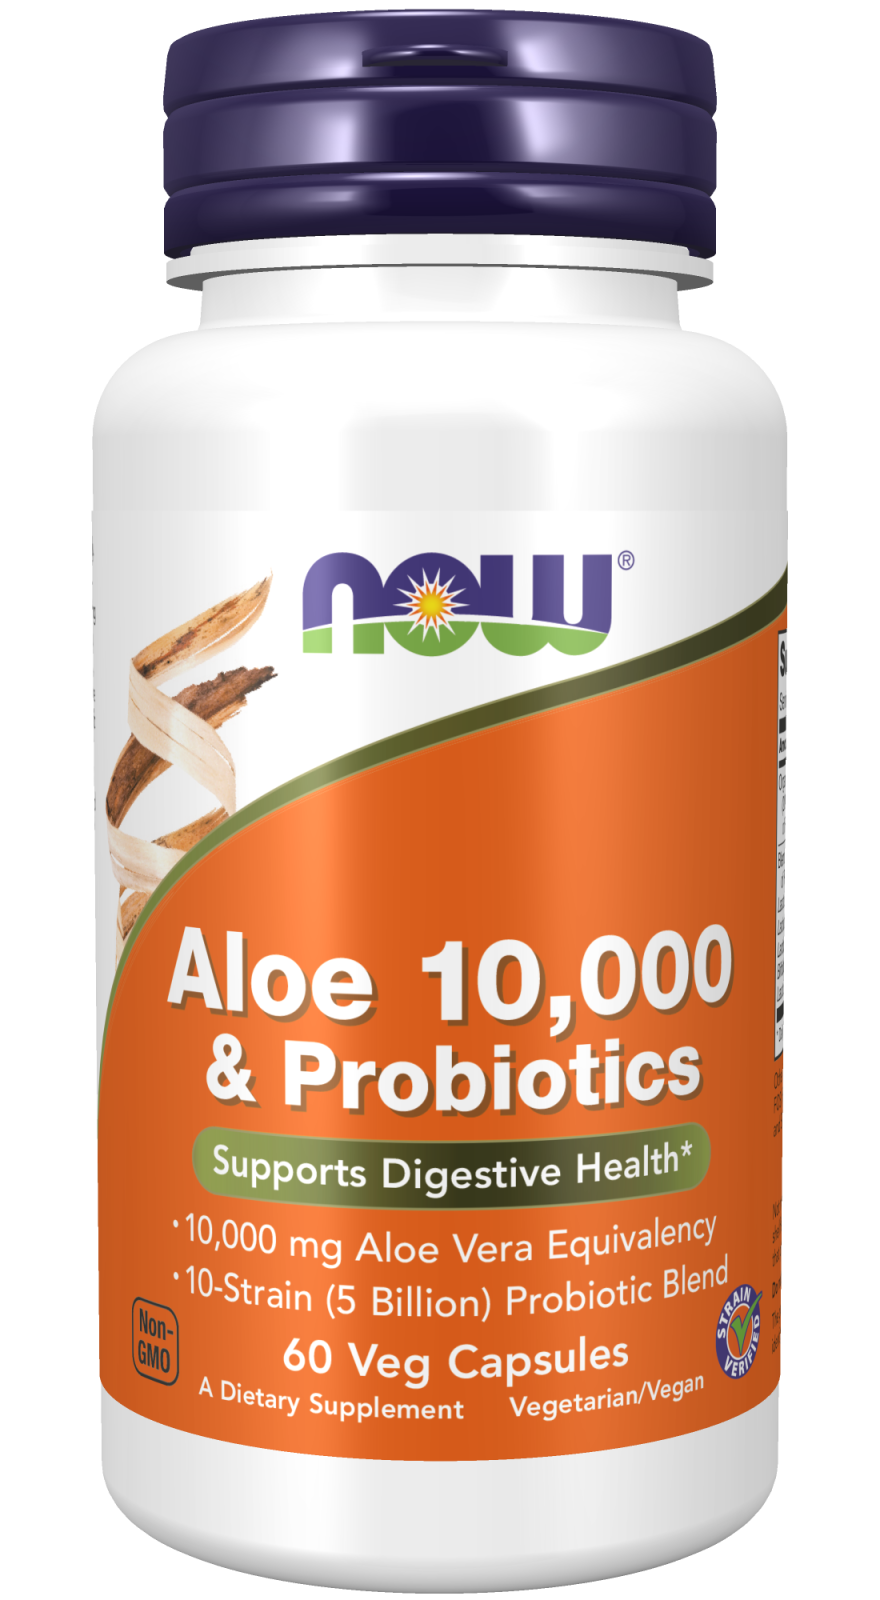 Aloe 10,000 & Probiotics - 60 Veg Capsules